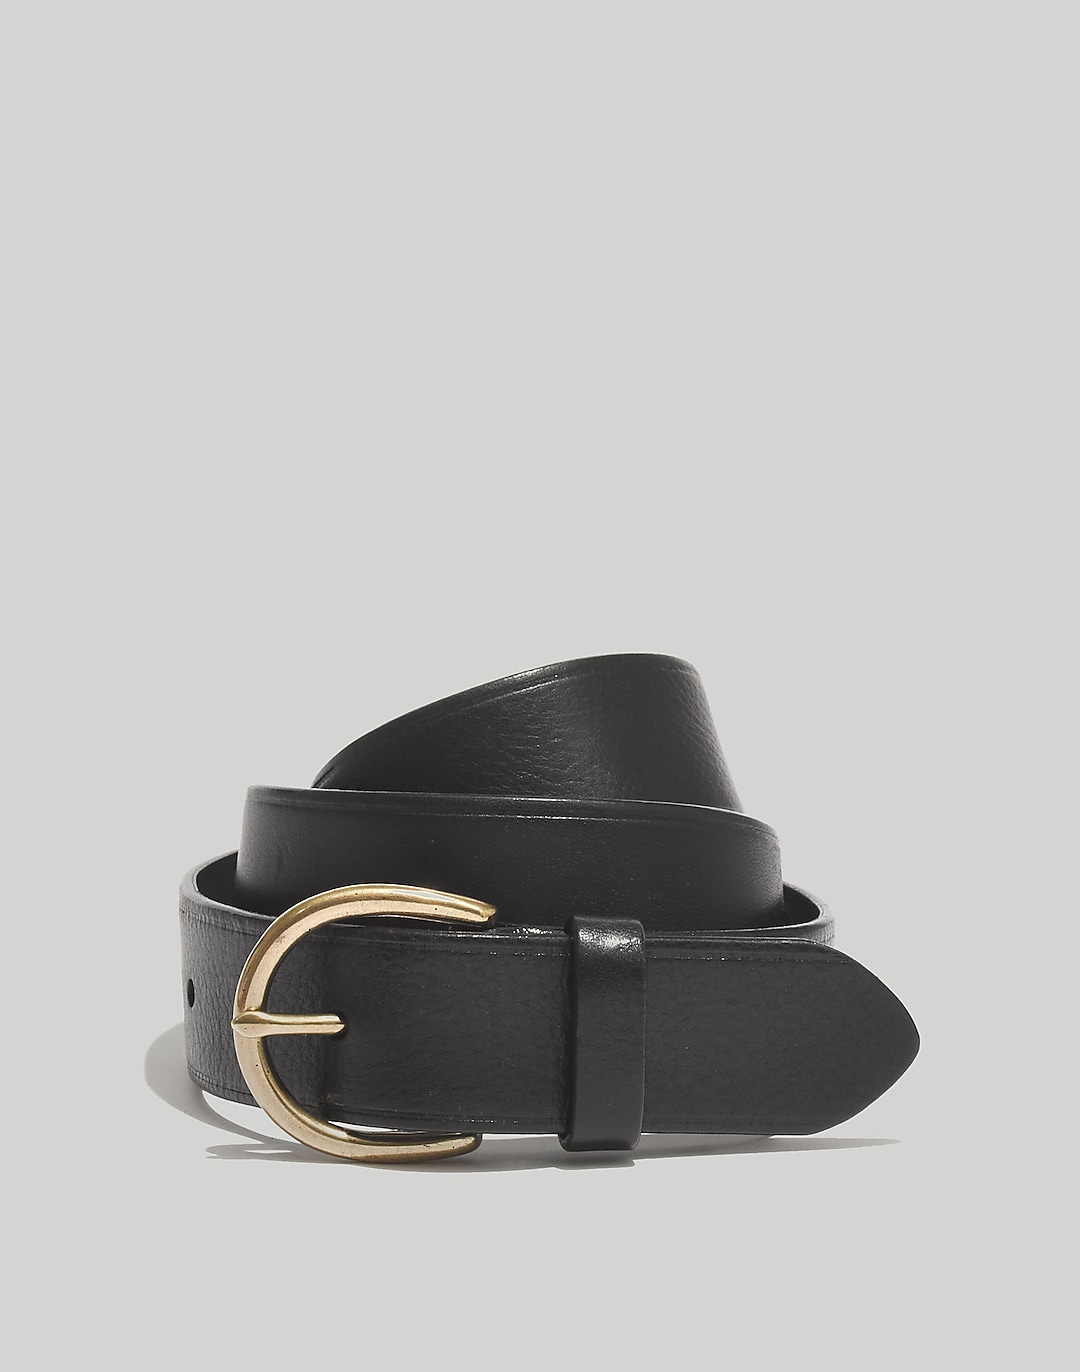 Madewell Medium Perfect Leather Belt | Madewell